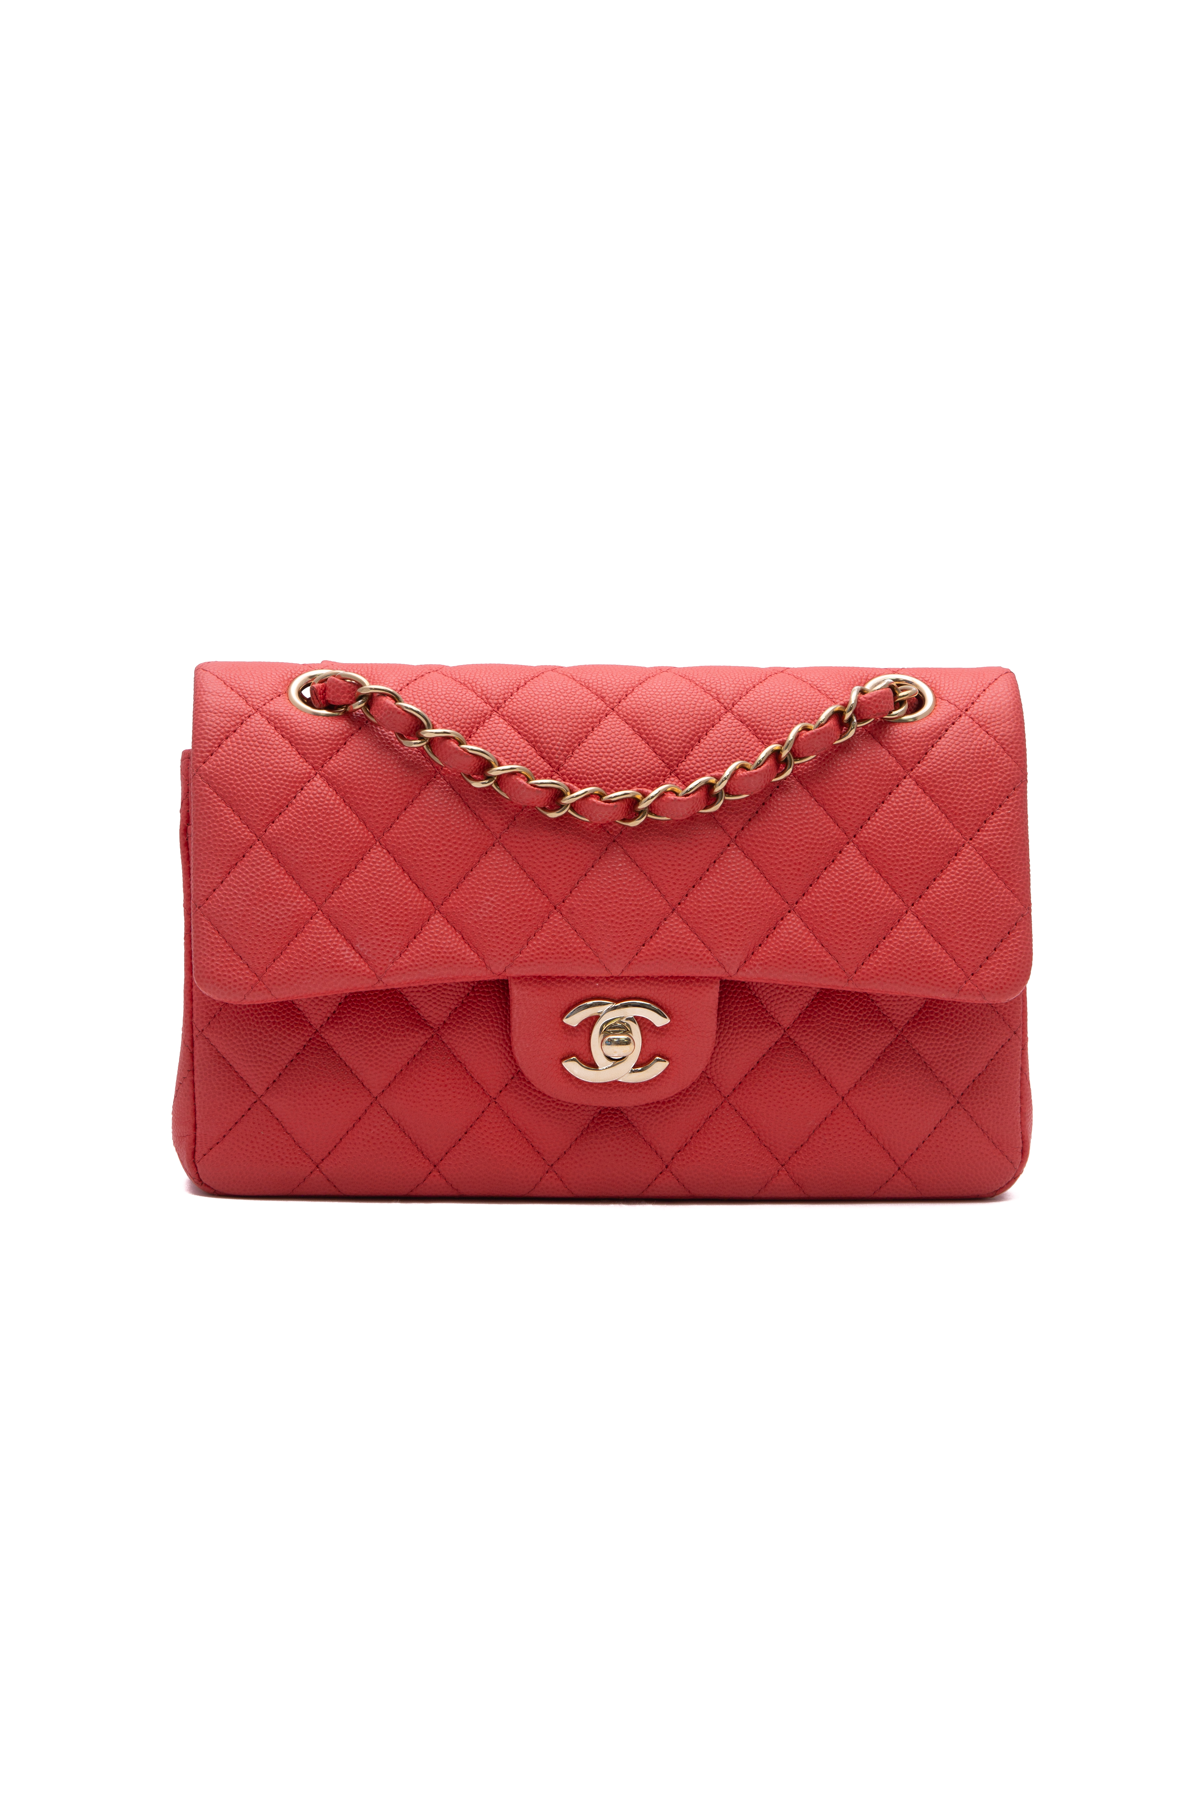 Chanel Bag, Leather, Handbag, Chanel Caviar, Shoulder Bag M, Flap Bag, Louis  Vuitton, Coin Purse transparent background PNG clipart